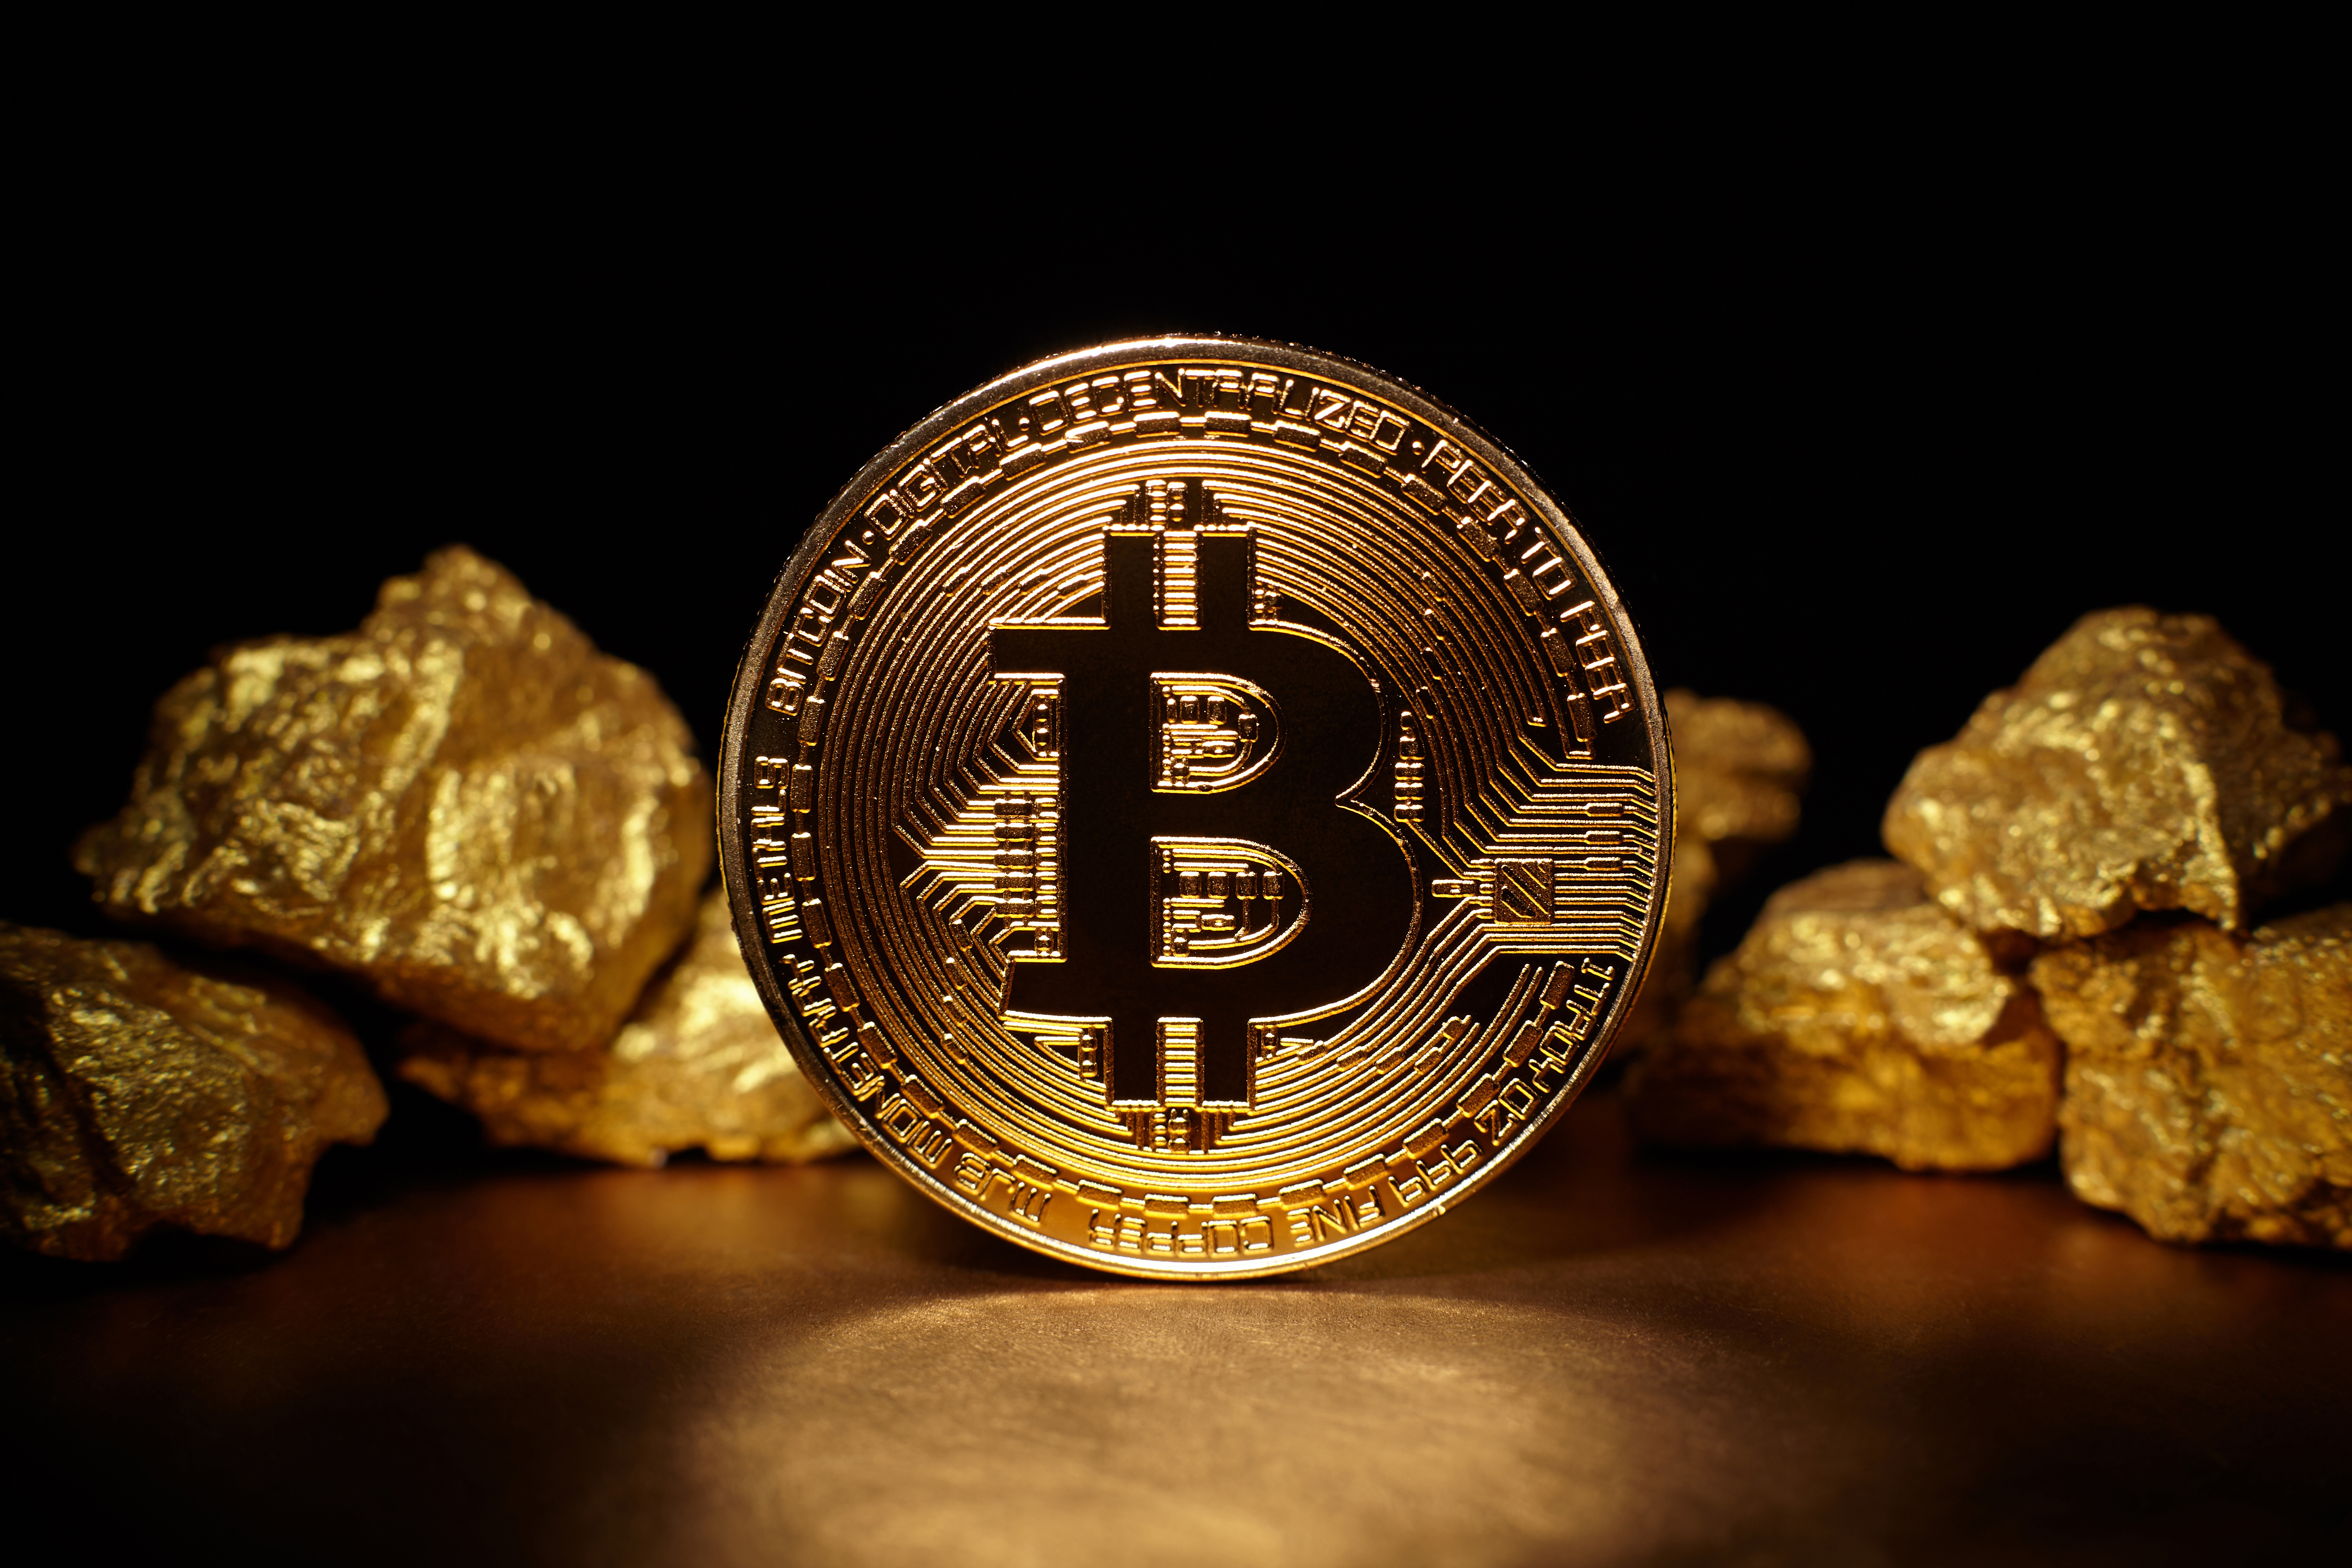 99bitcoins cliaming bitcoin gold